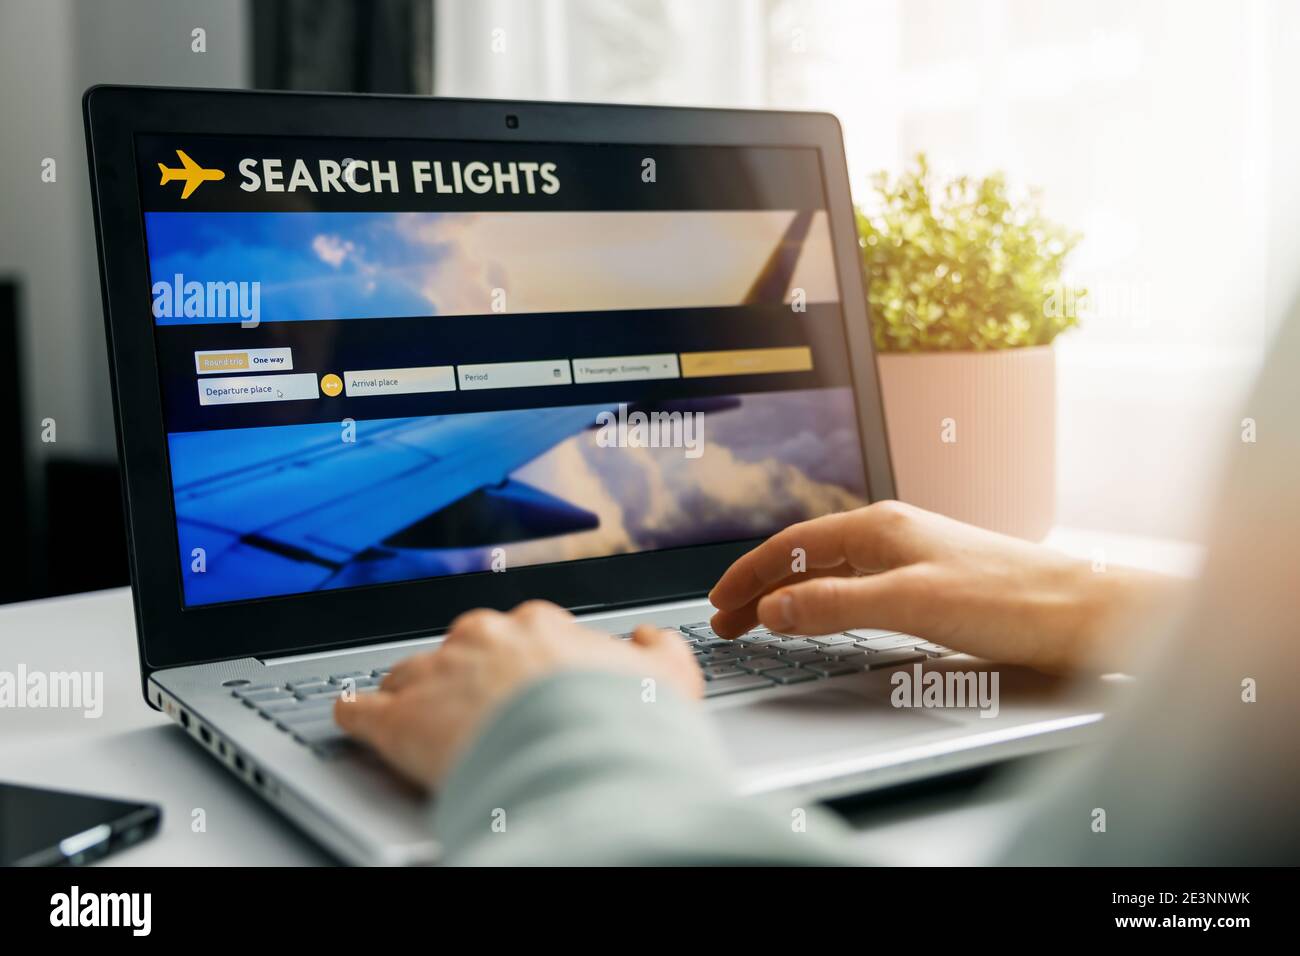 prenotazione online - persona che usa il sito internet nel computer portatile per ricerca e prenotazione di voli Foto Stock